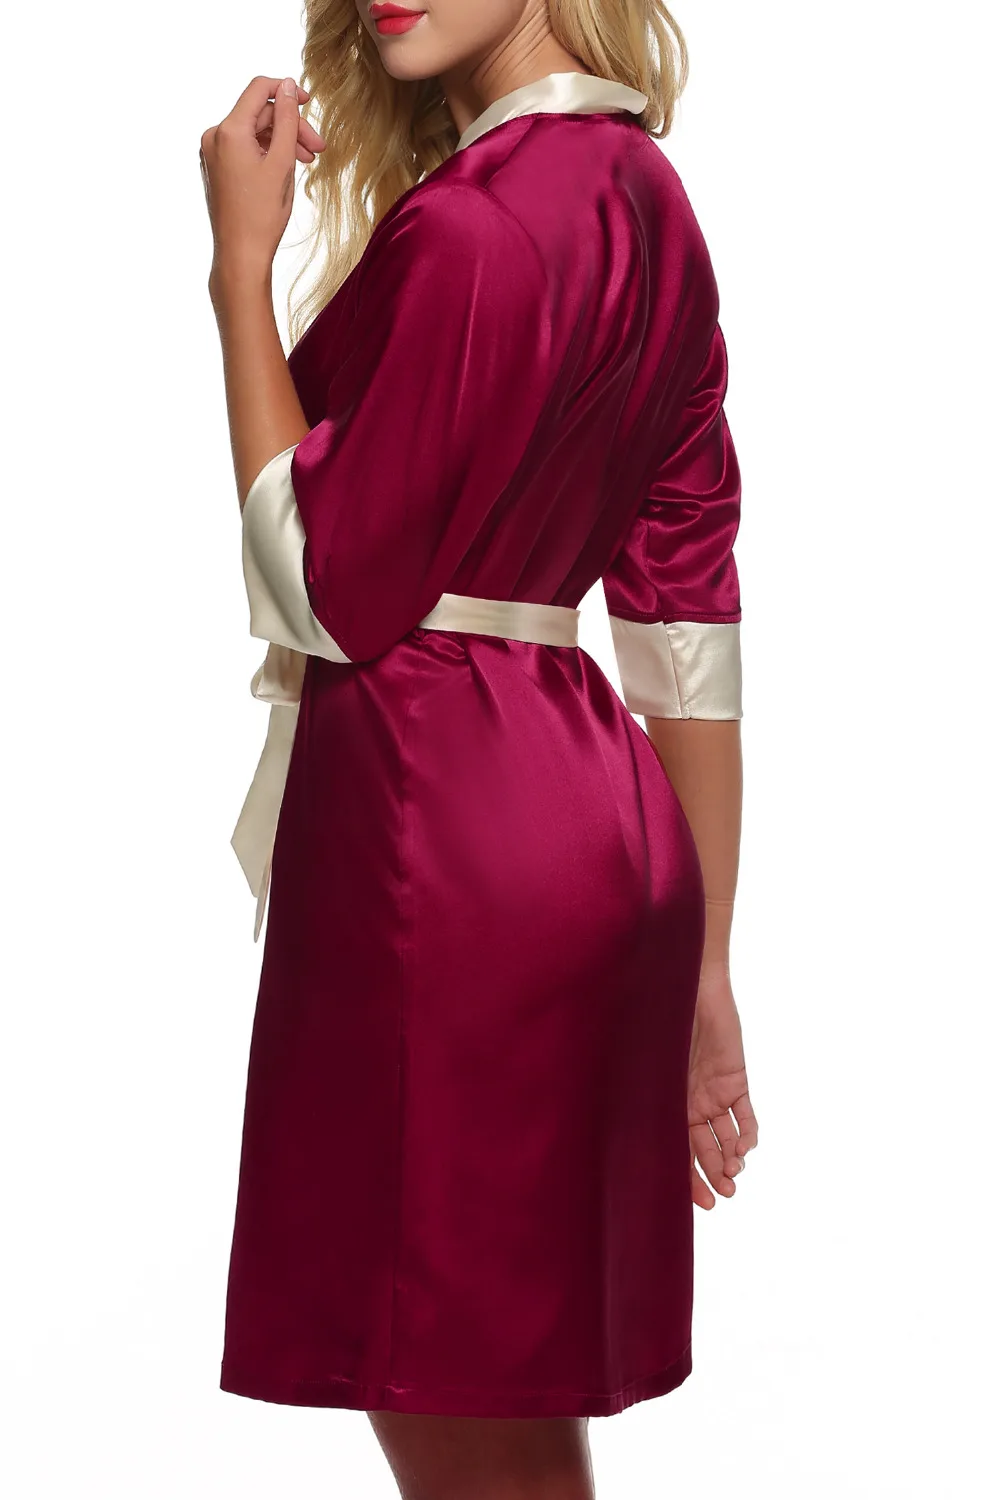 Ekouaer женское кимоно халат до колена халат сексуальное женское белье пижамы Короткие атласные кружева Ночное белье невесты Халаты XS-XL